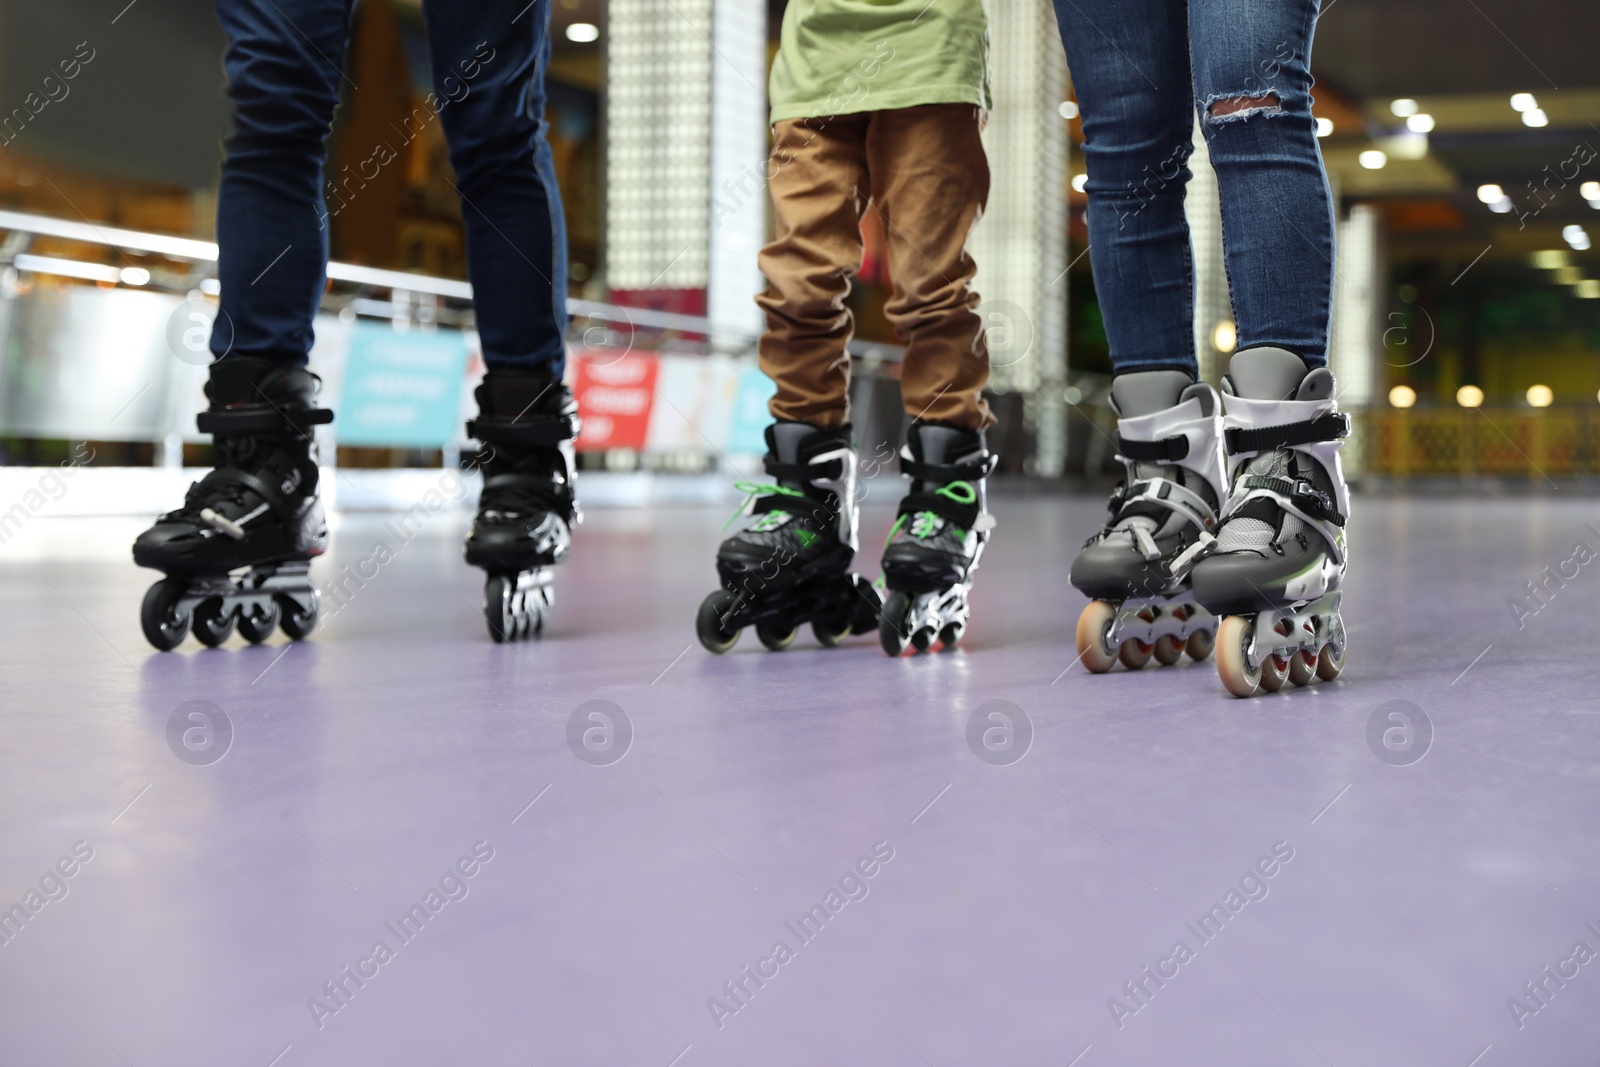 Photo of Family at roller skating rink, closeup view